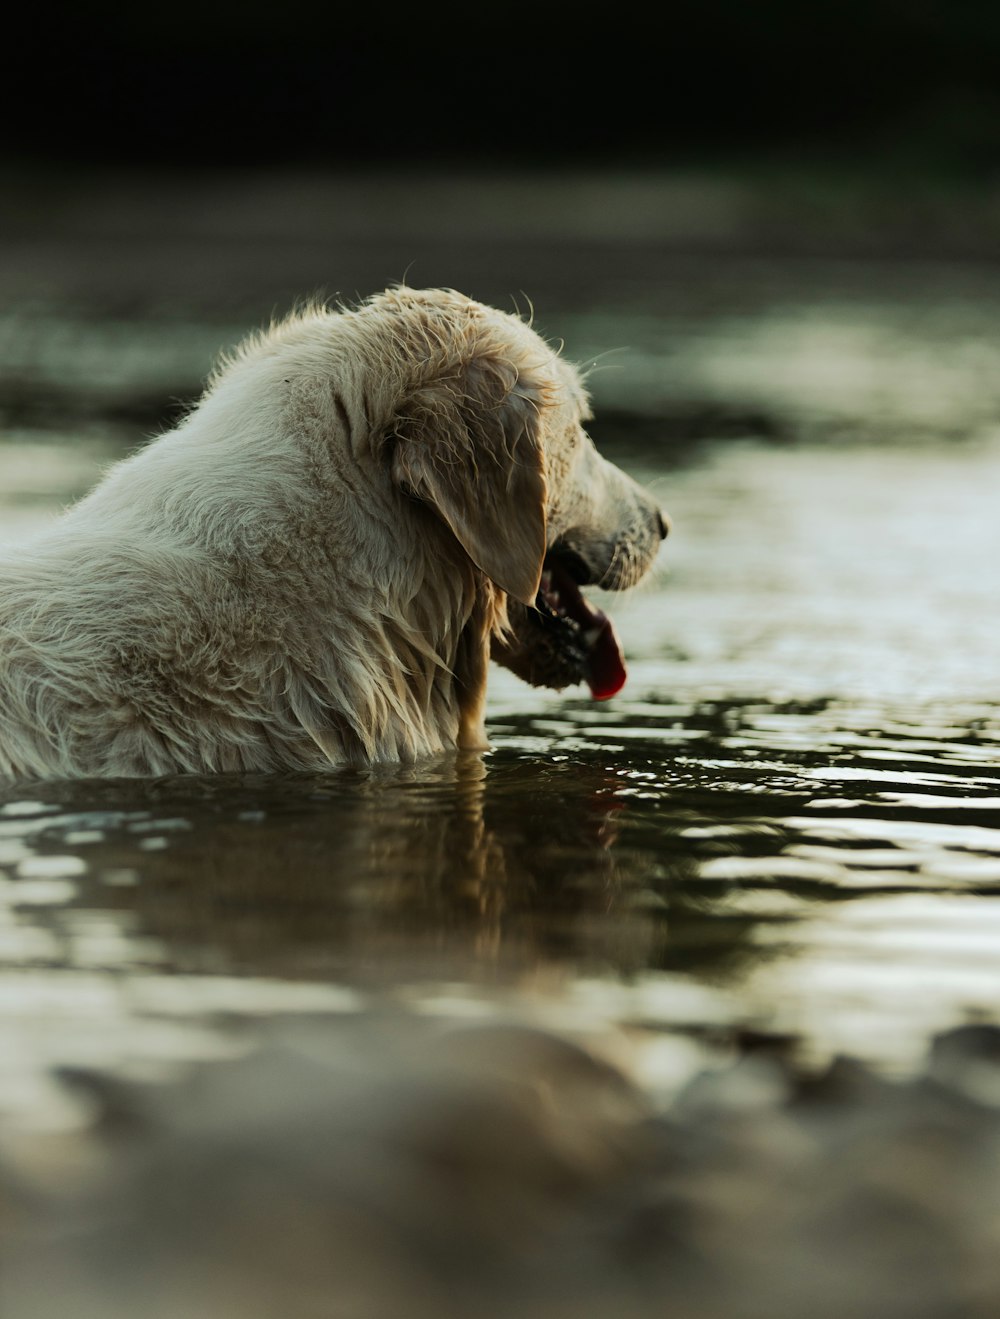 cane a pelo corto bianco che beve acqua sull'acqua durante il giorno